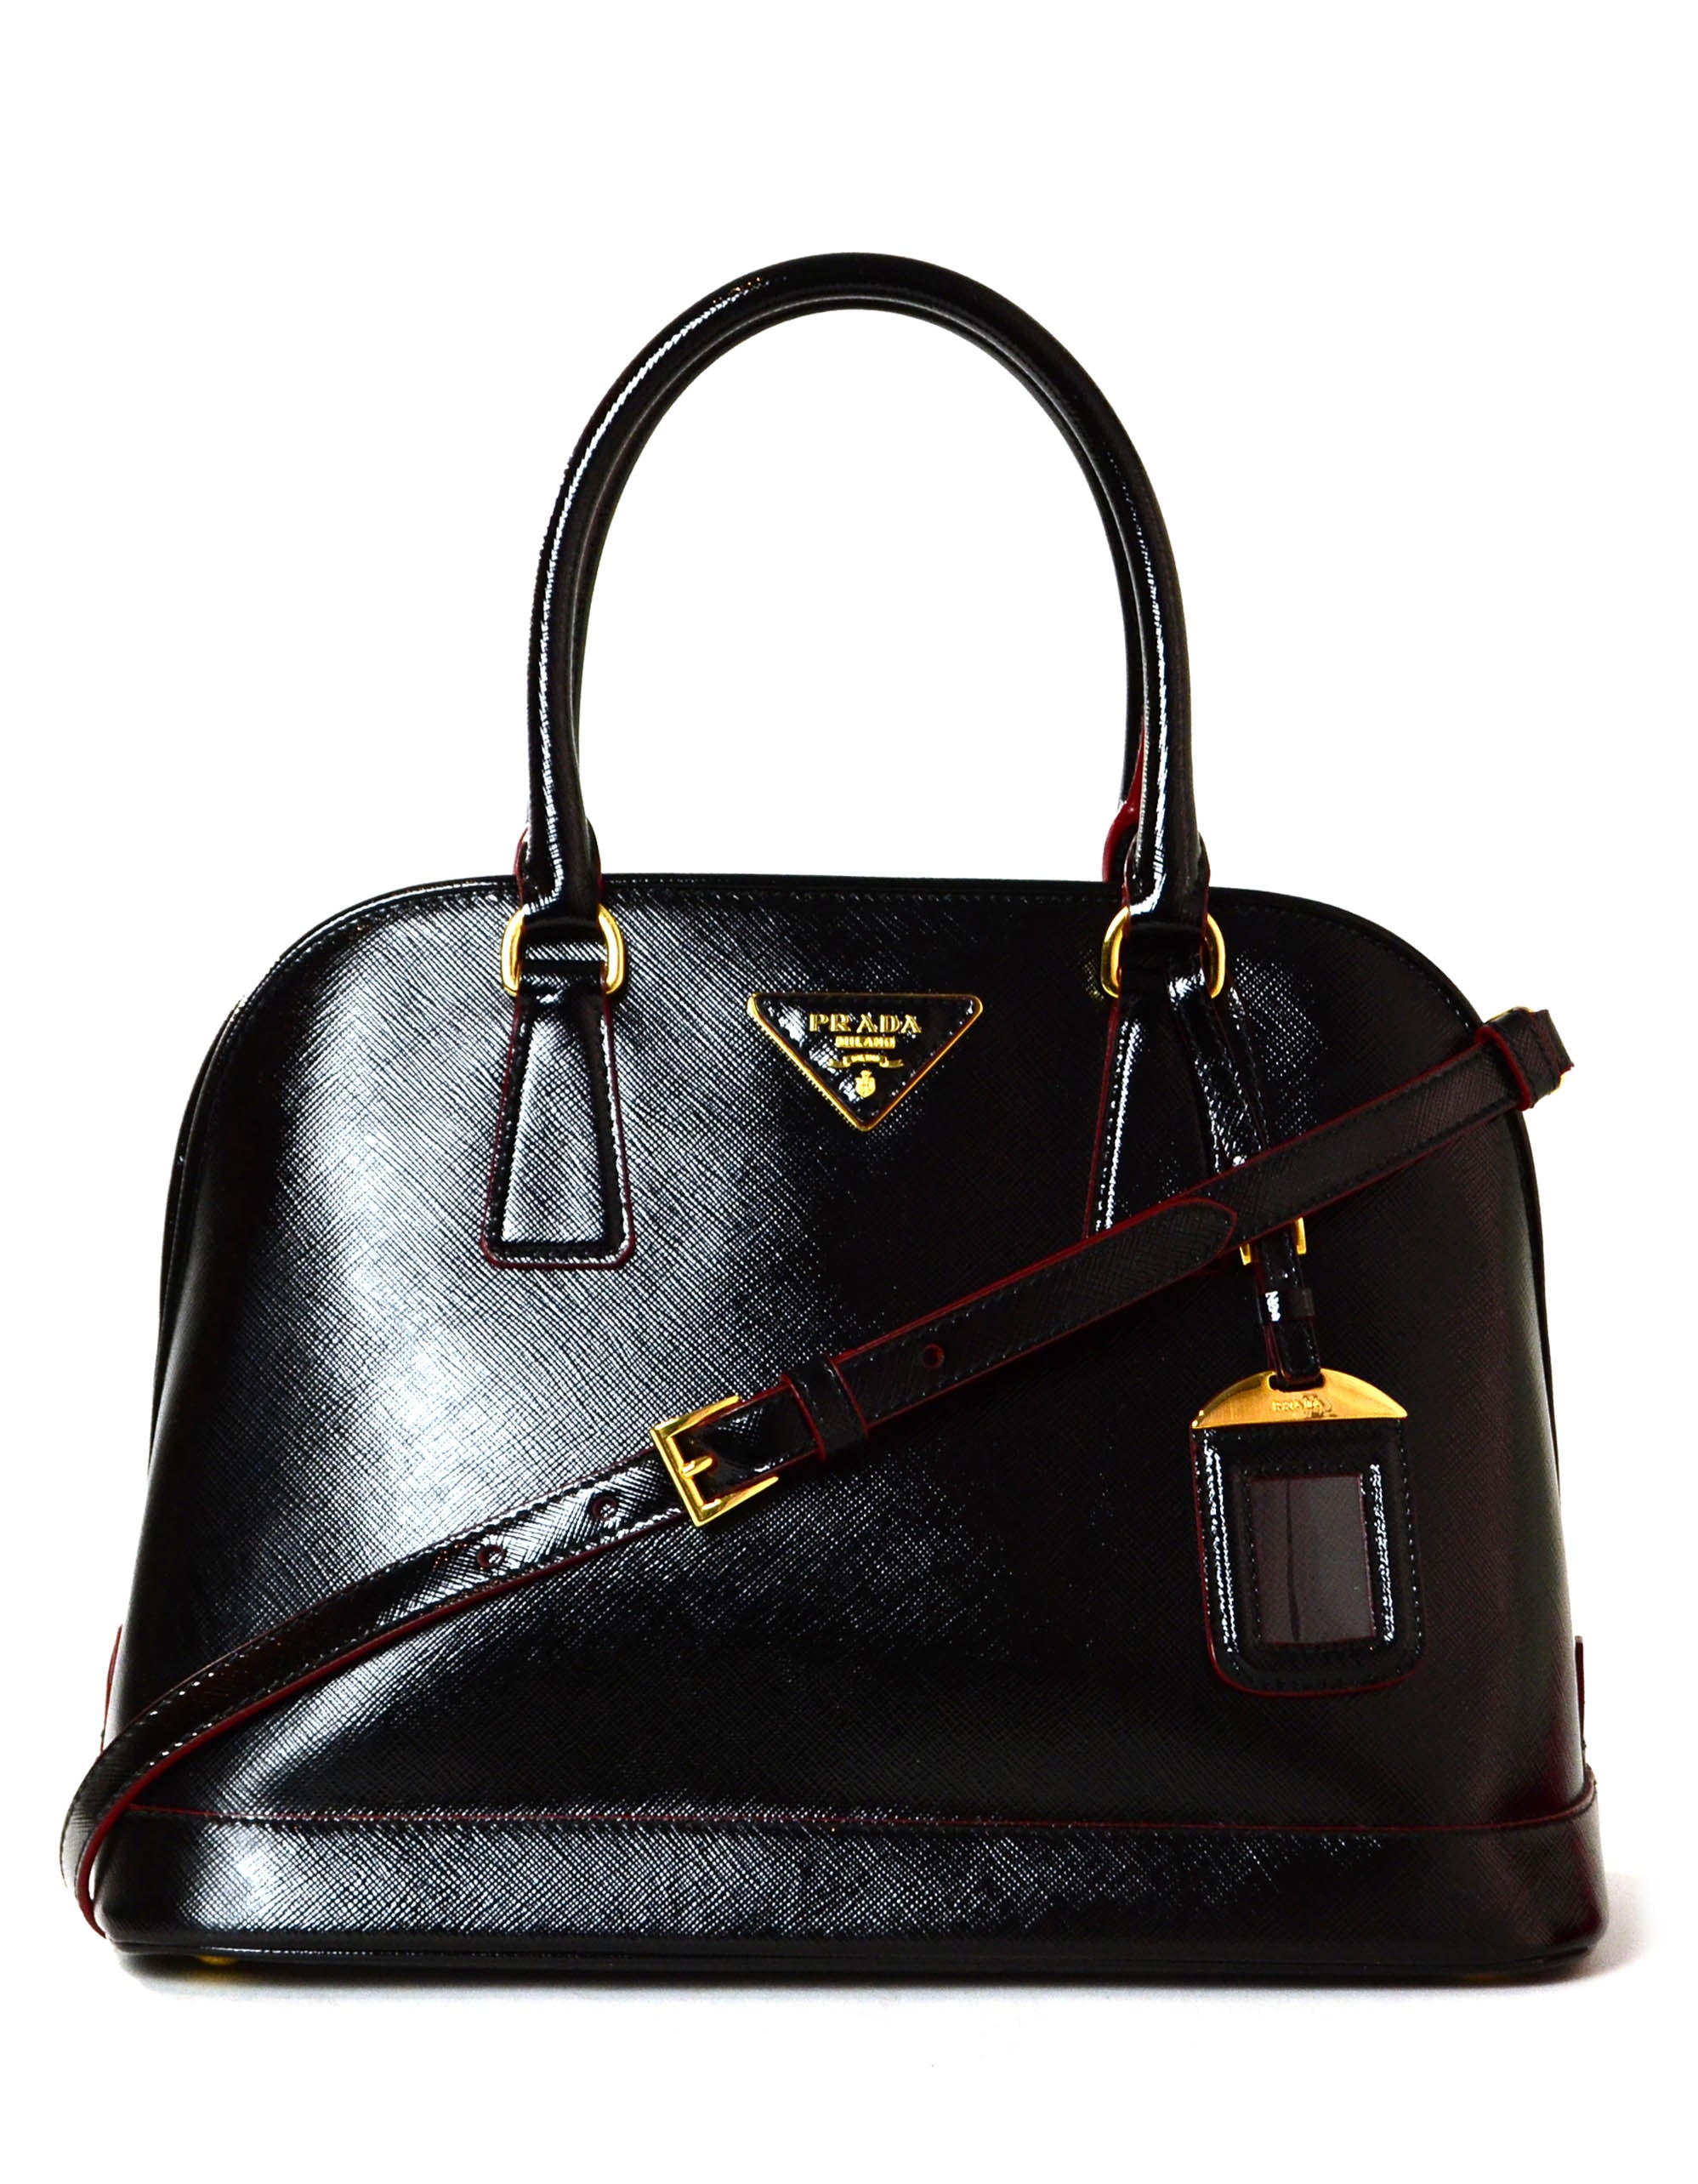 Prada Black/Red Saffiano Vernice Leather Promendade Bag 1BA567